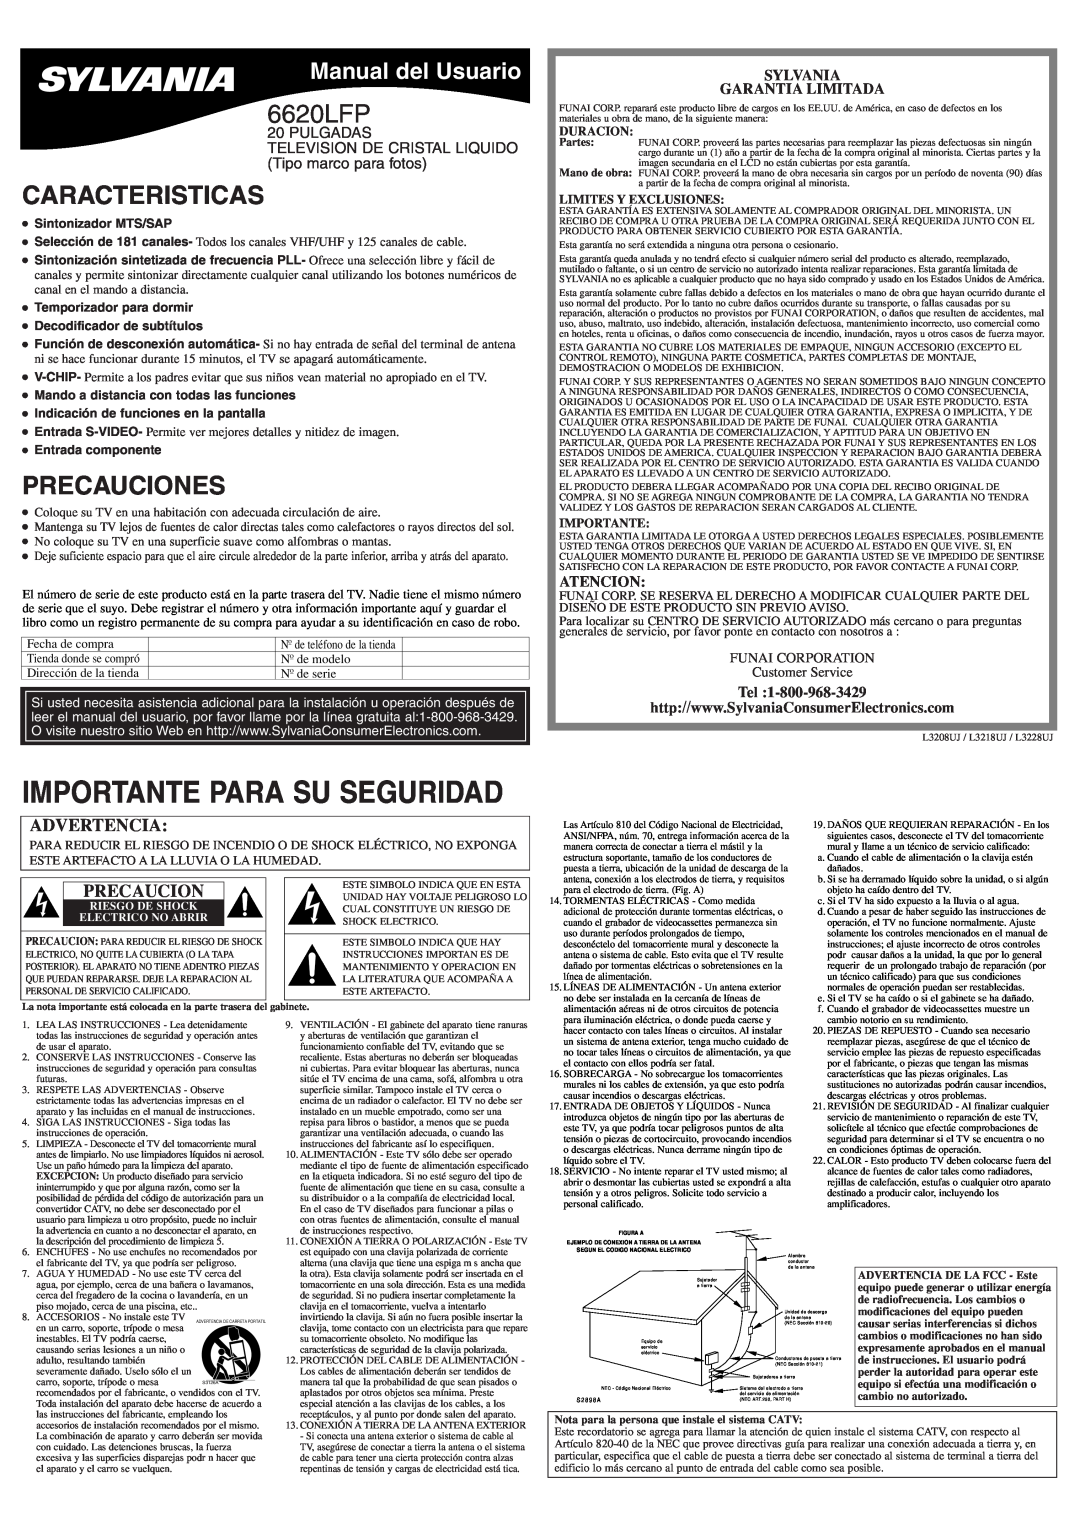 Sylvania 6620LFP Caracteristicas, Precauciones, Manual del Usuario, Sylvania Garantia Limitada, Atencion, Duracion 